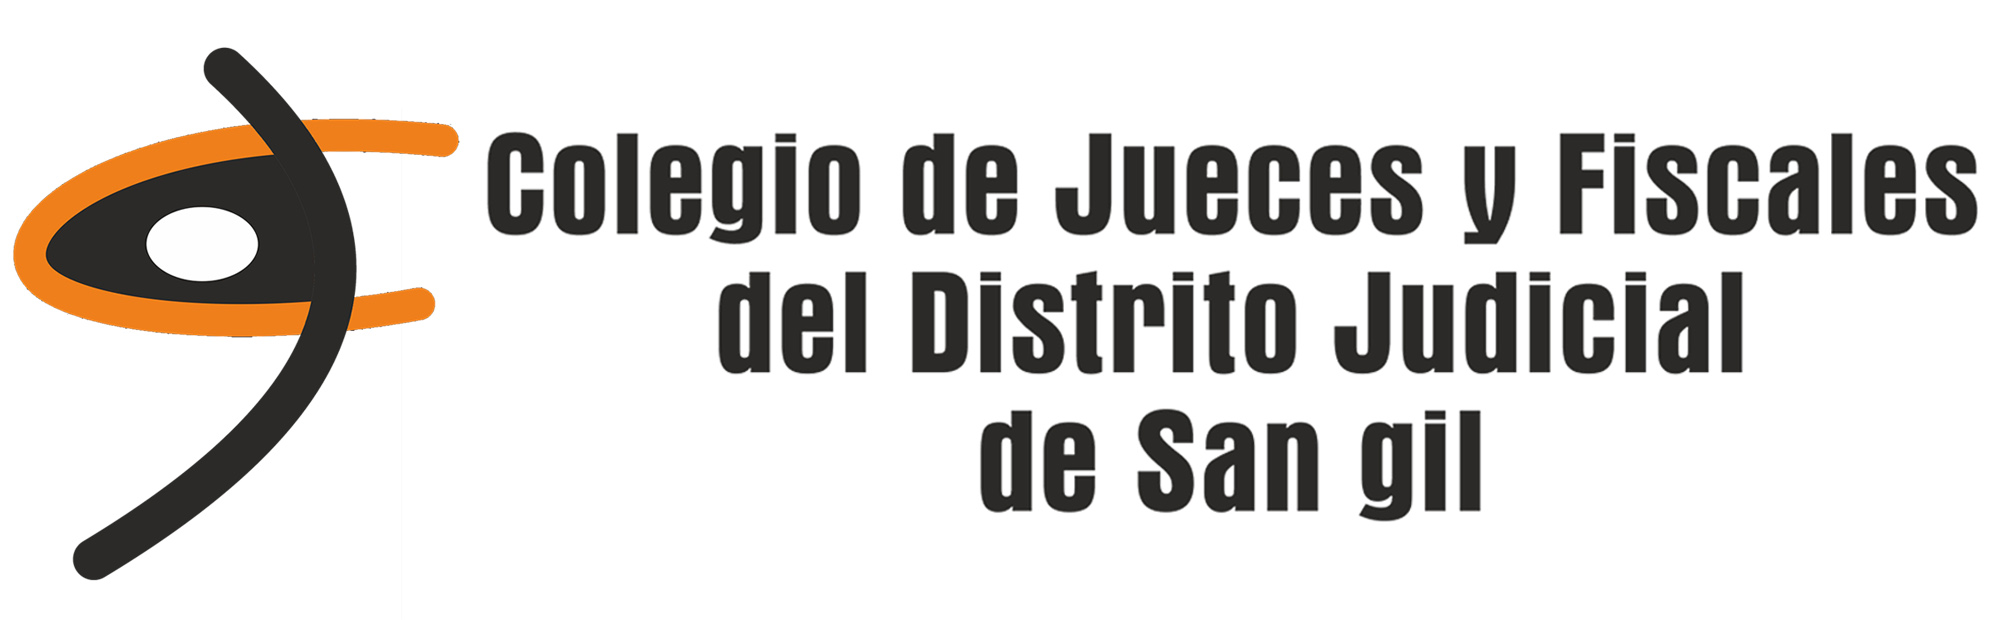 Colegio de jueces y fiscales de San Gil